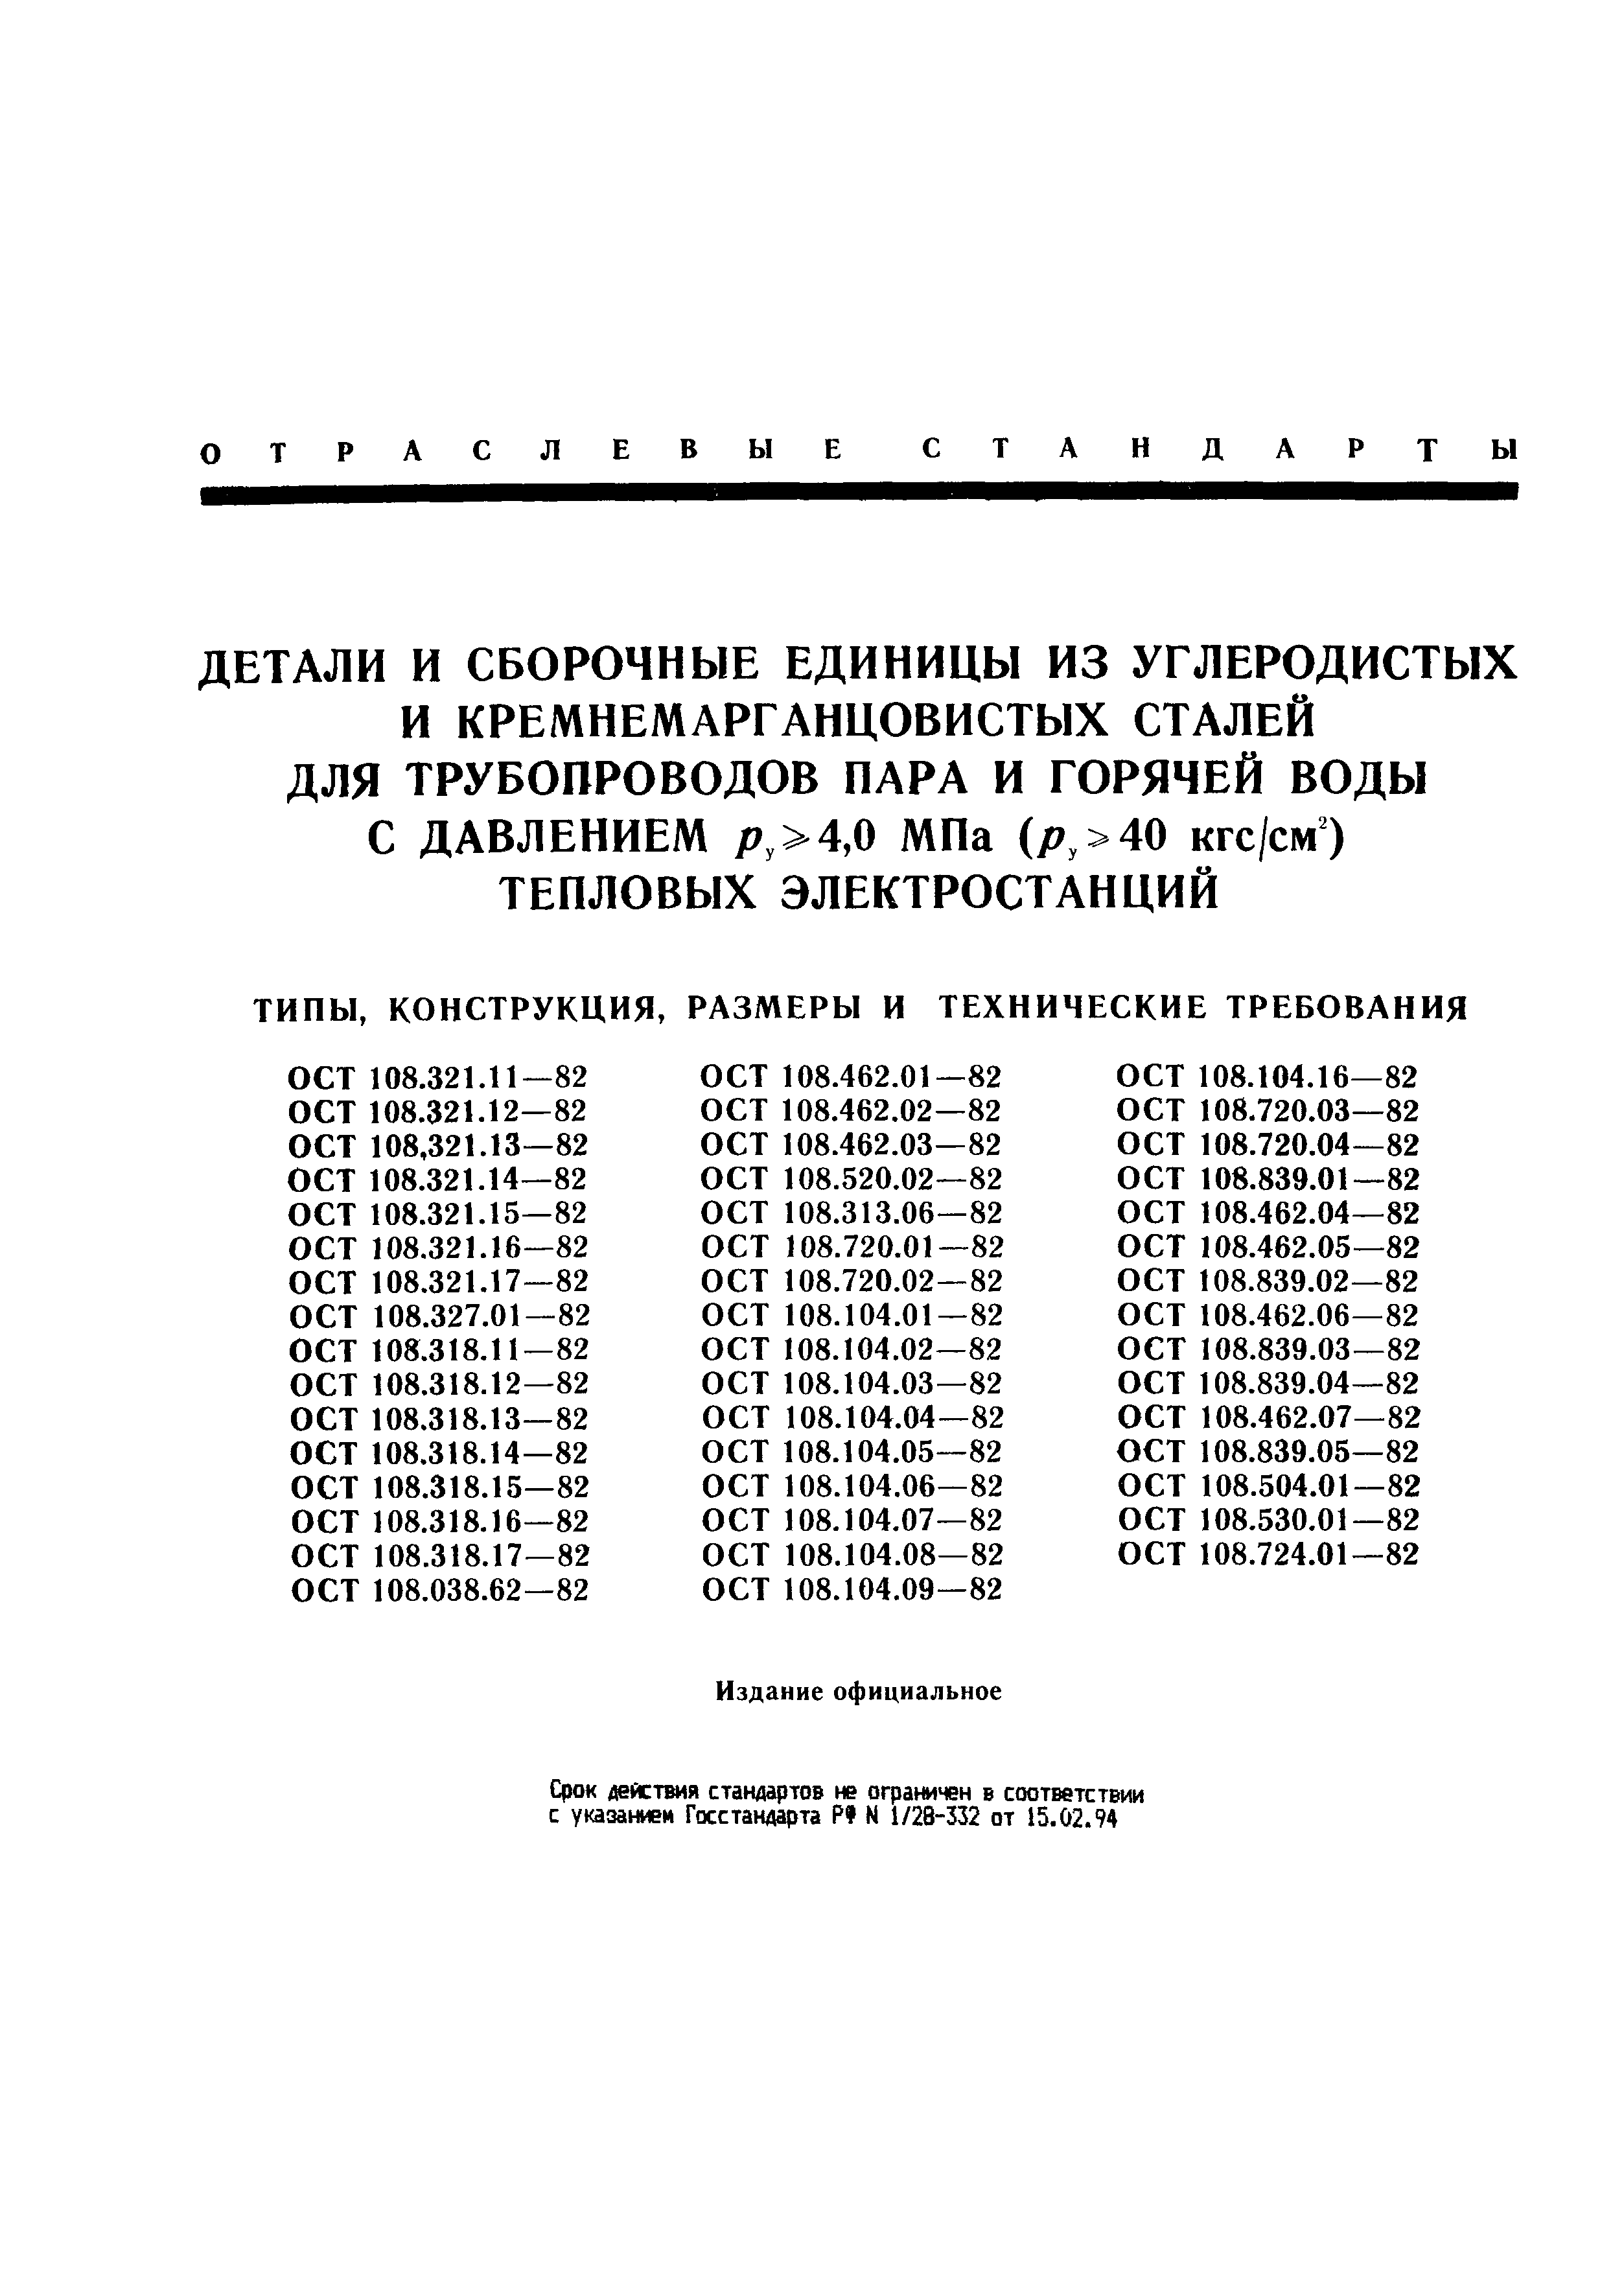 ОСТ 108.104.03-82